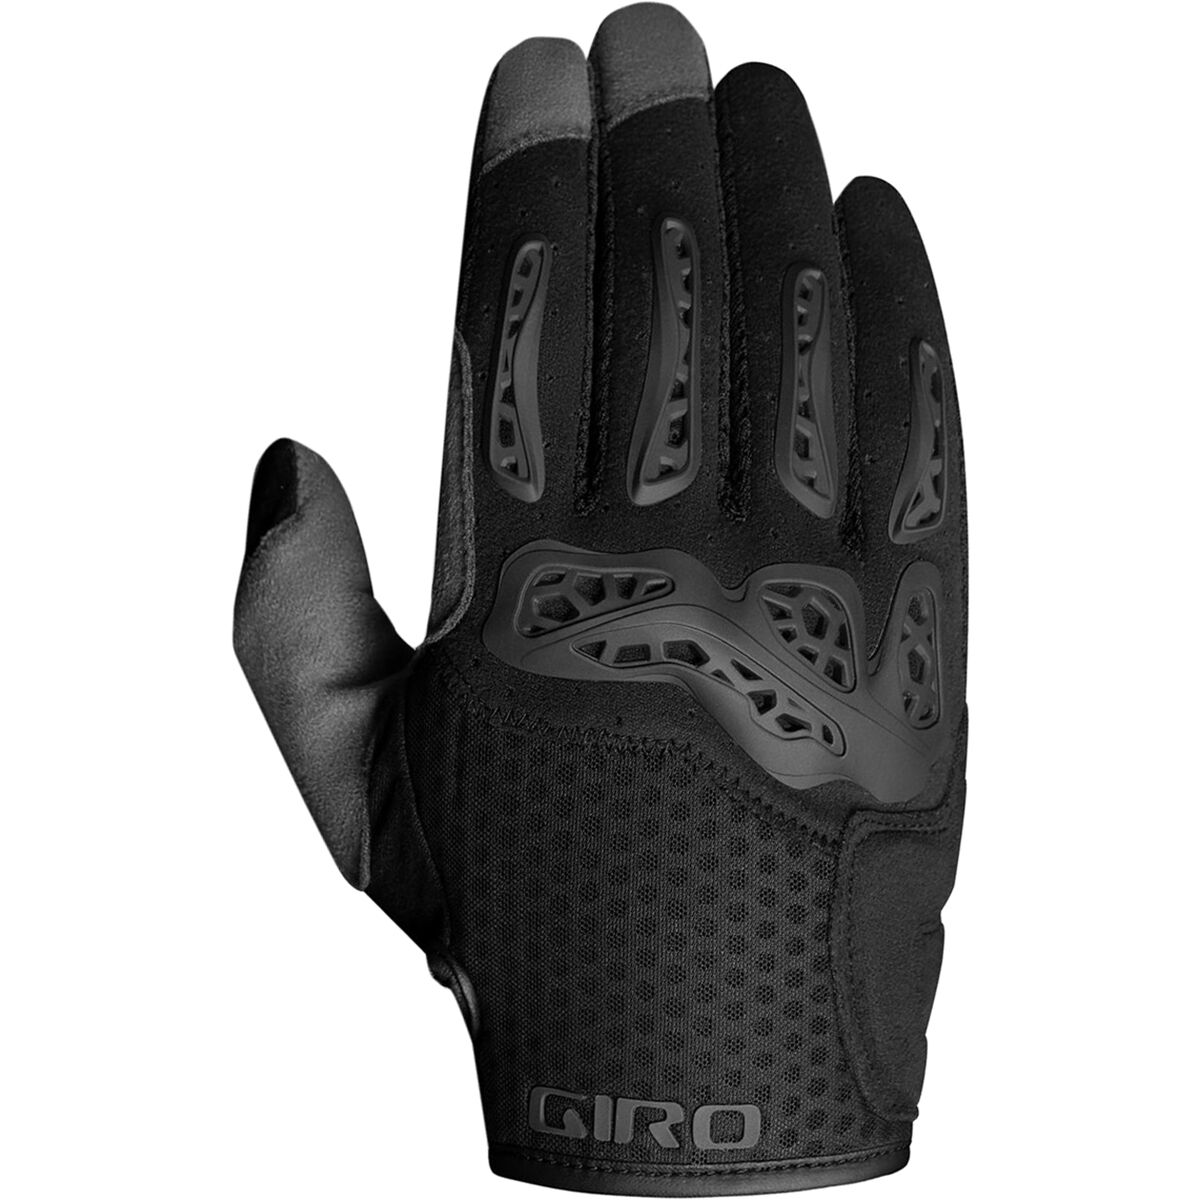 Giro Gnar Glove - Men's